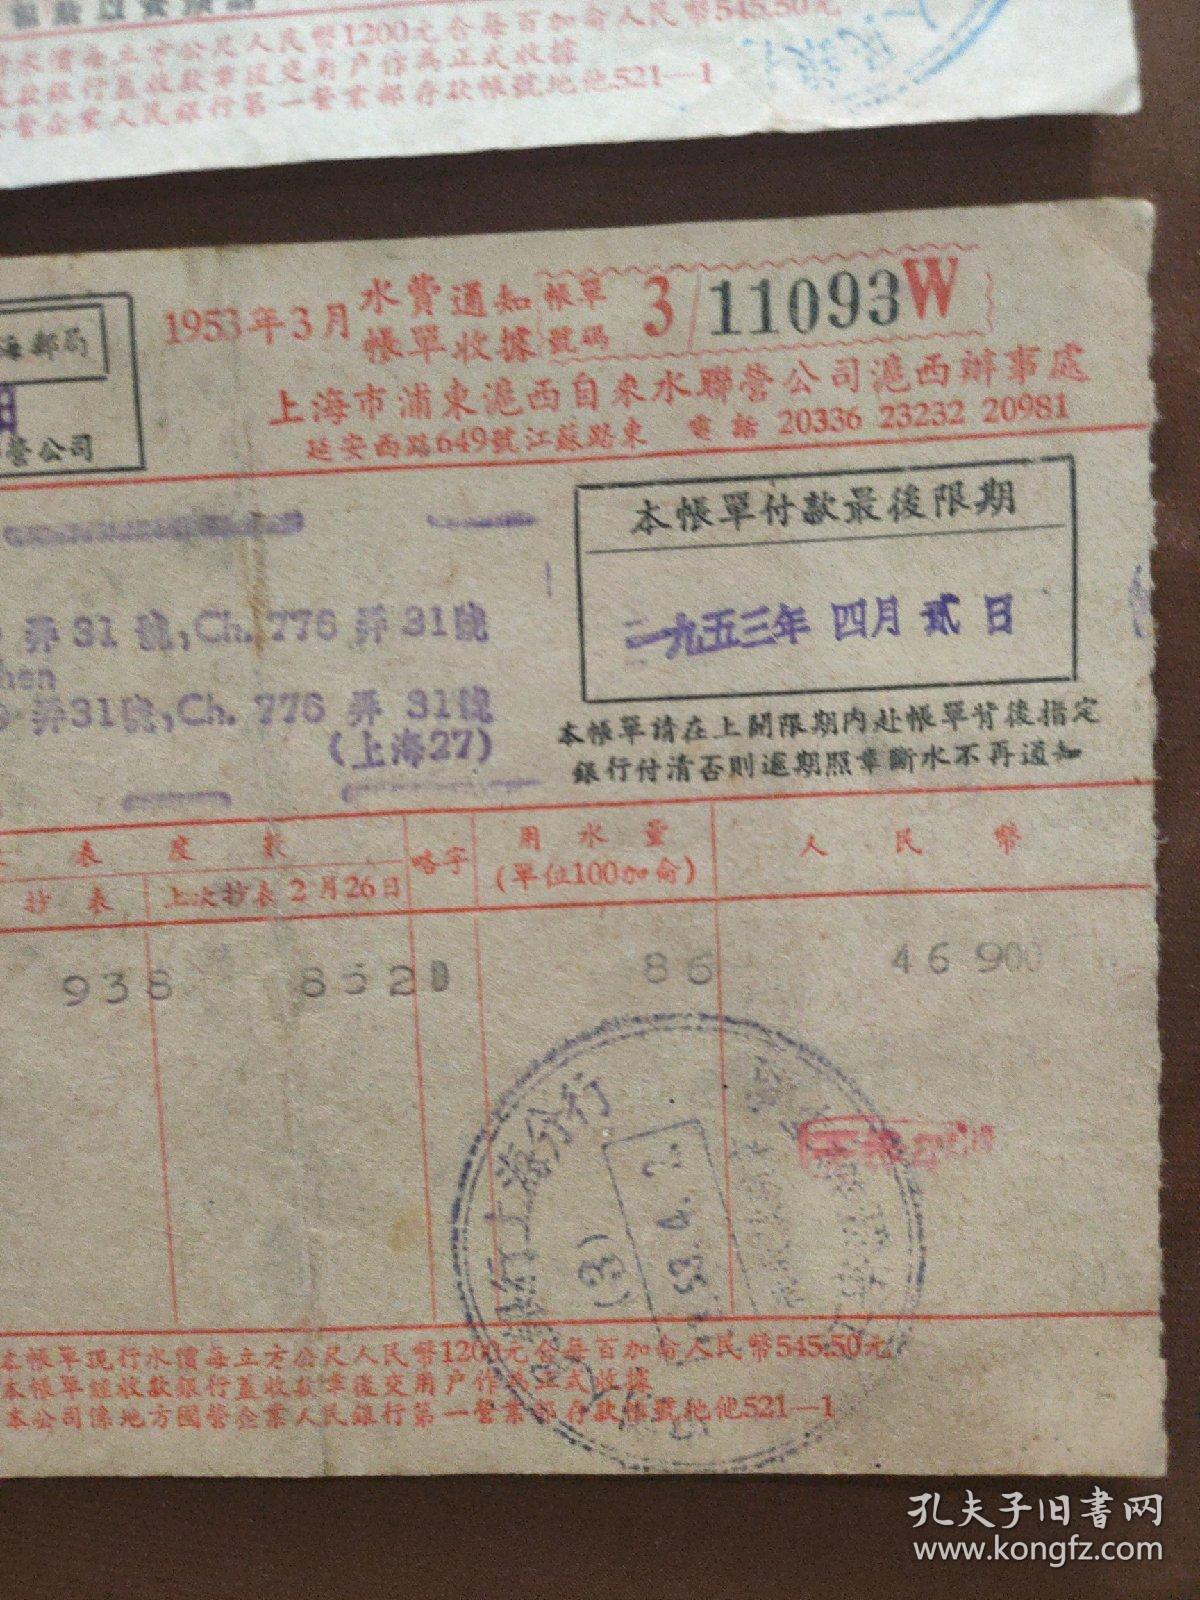 1953年上海水费帐单2张